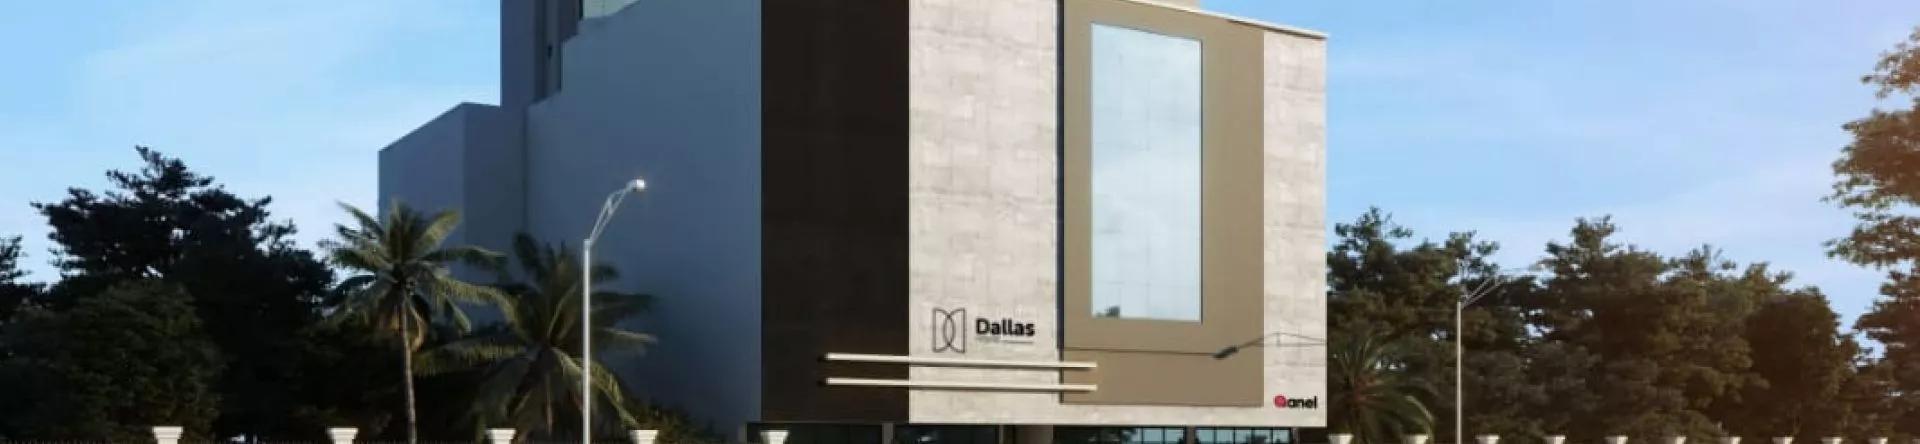 Fachada do Dallas House, da Anel Construtora 